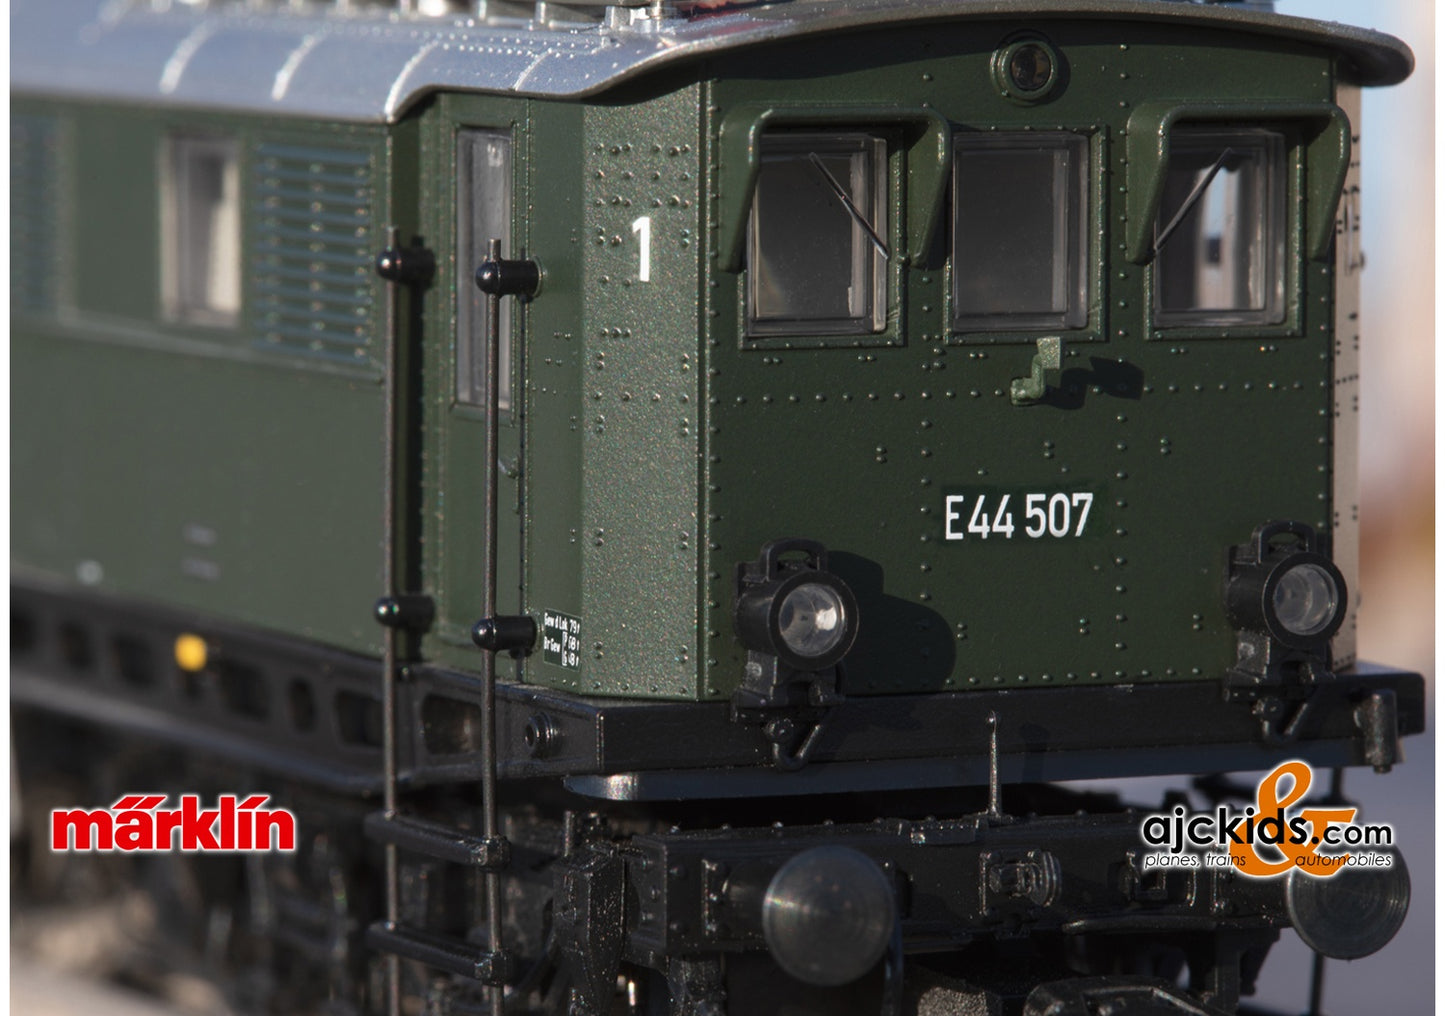 Marklin 39445 - Class E 44.5 Electric Locomotive at Ajckids.com